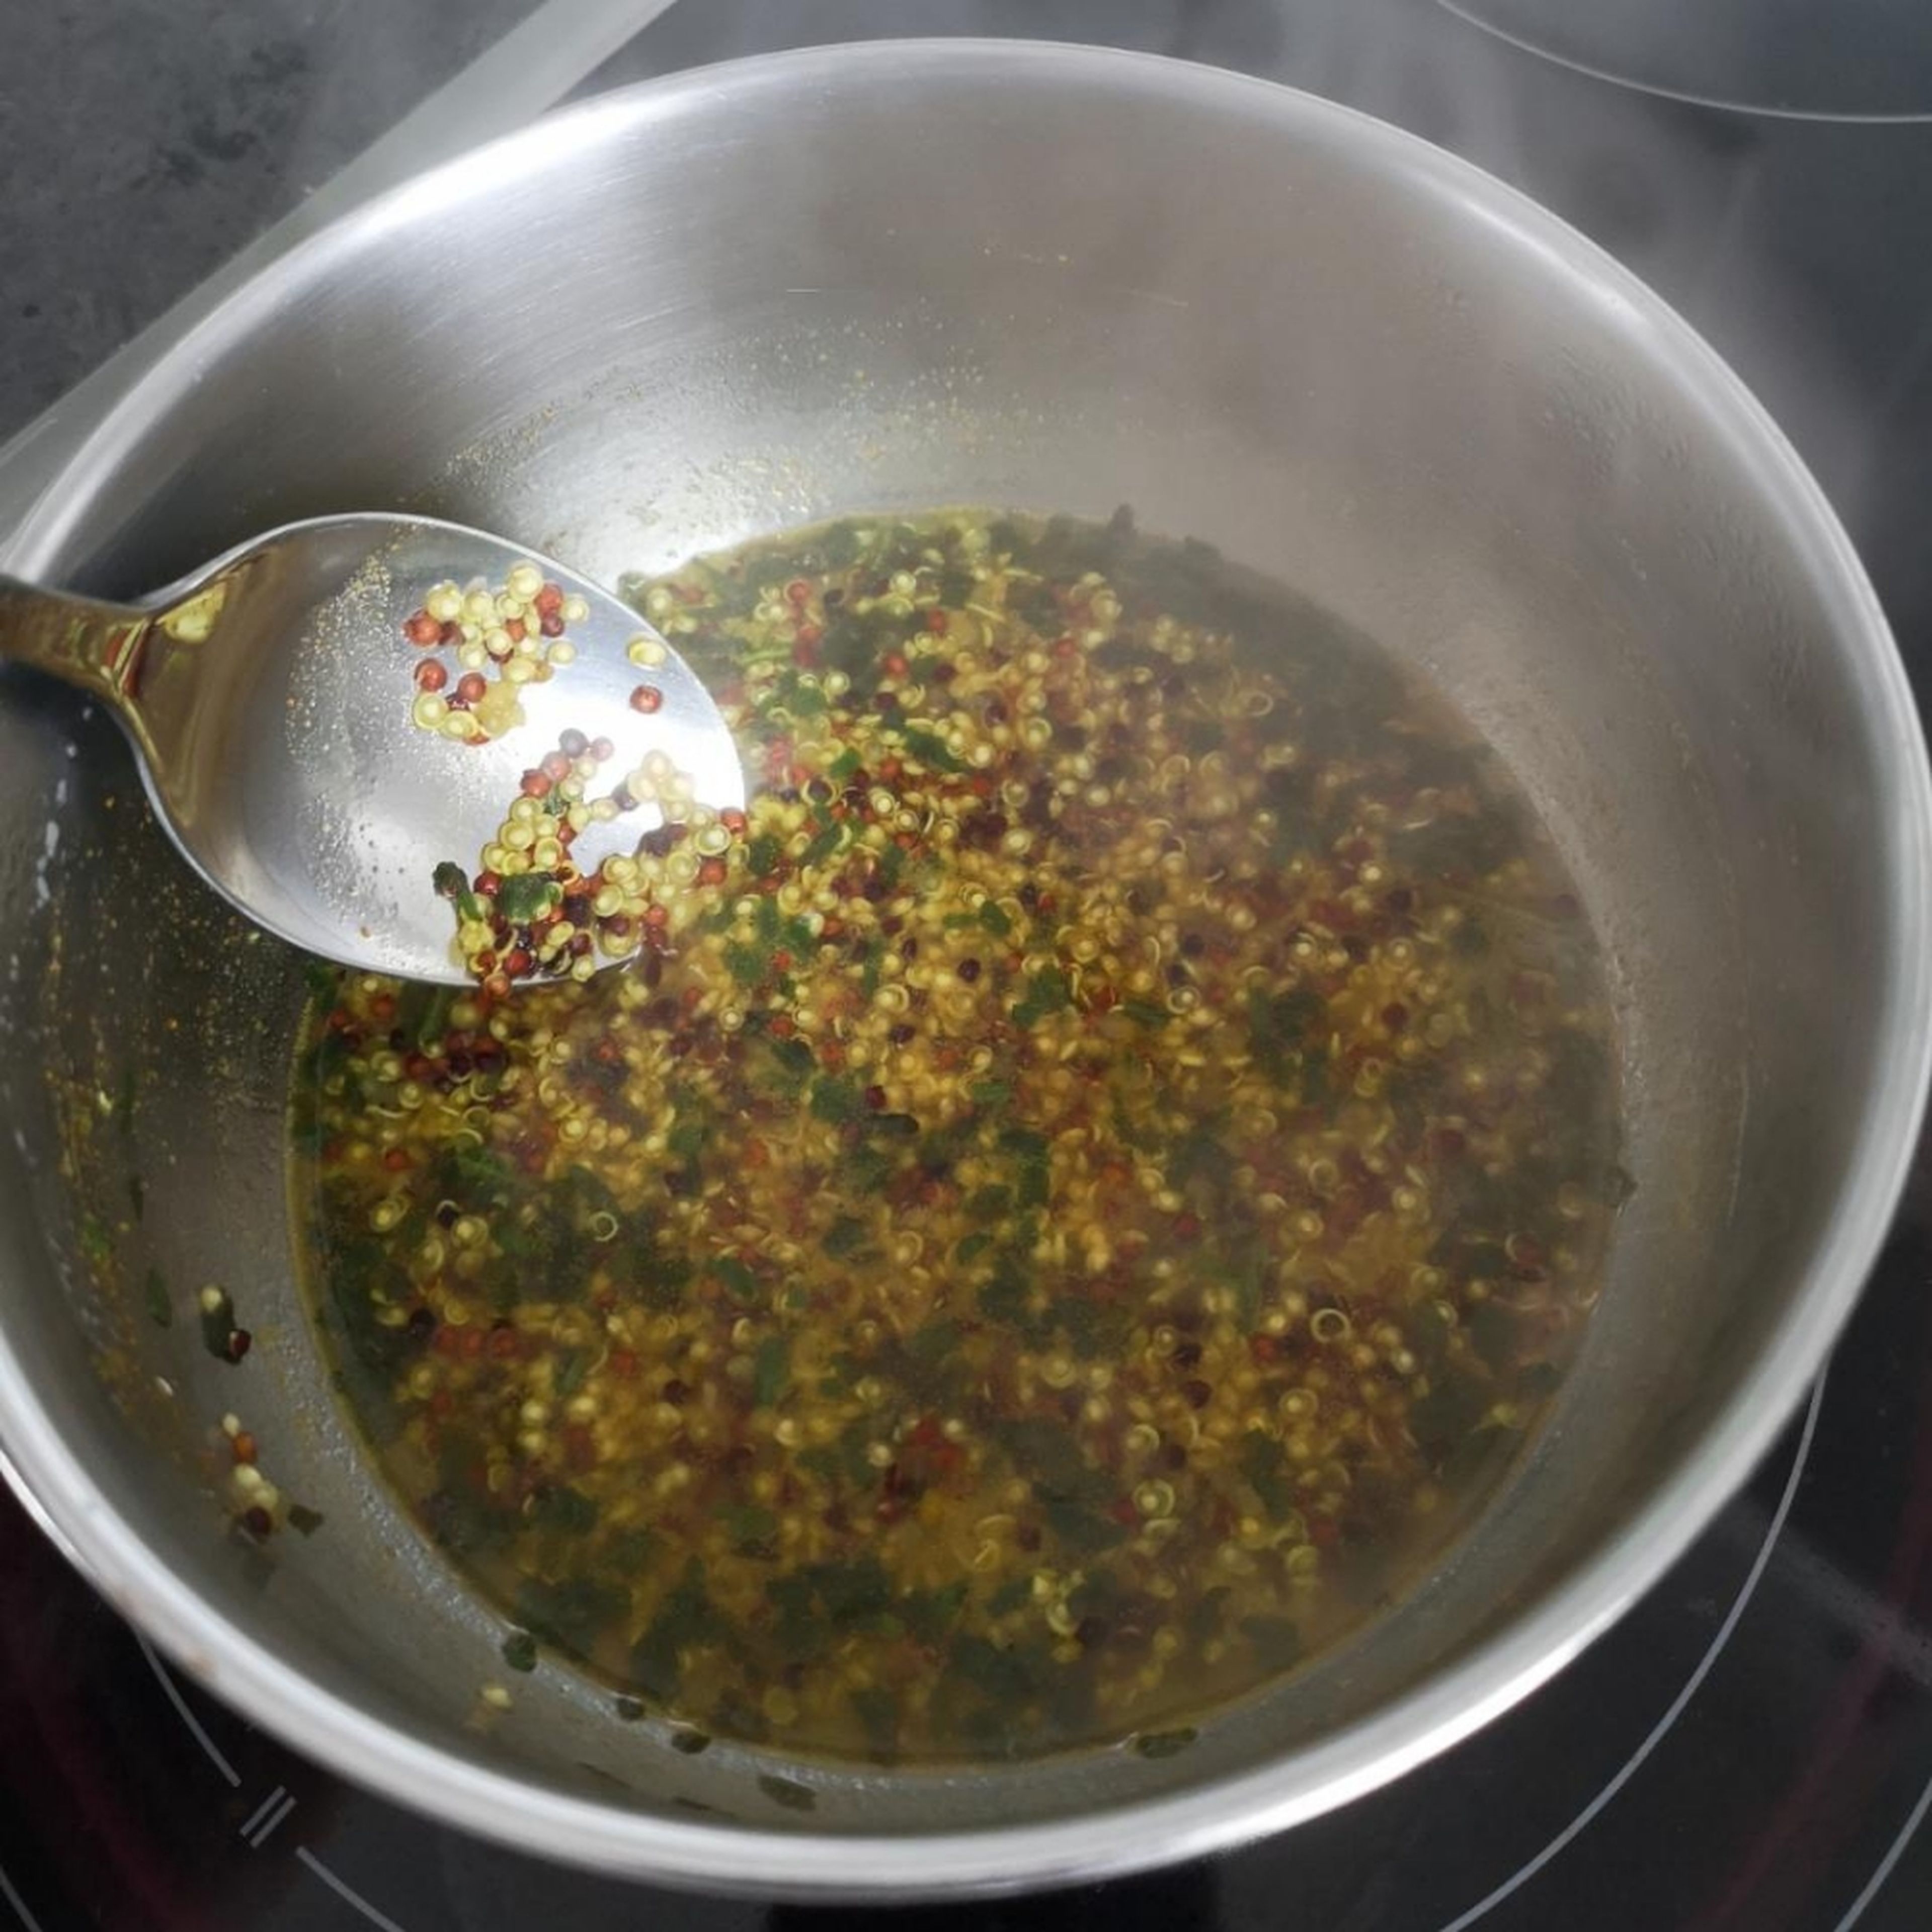 Quinoa nach Anleitung mit Wasser kochen. Hühnerbrühe, Kurkuma und Bärlauch nach Geschmack hinzufügen - etwa 20 min mit gelegentlichem umrühren köcheln lassen.